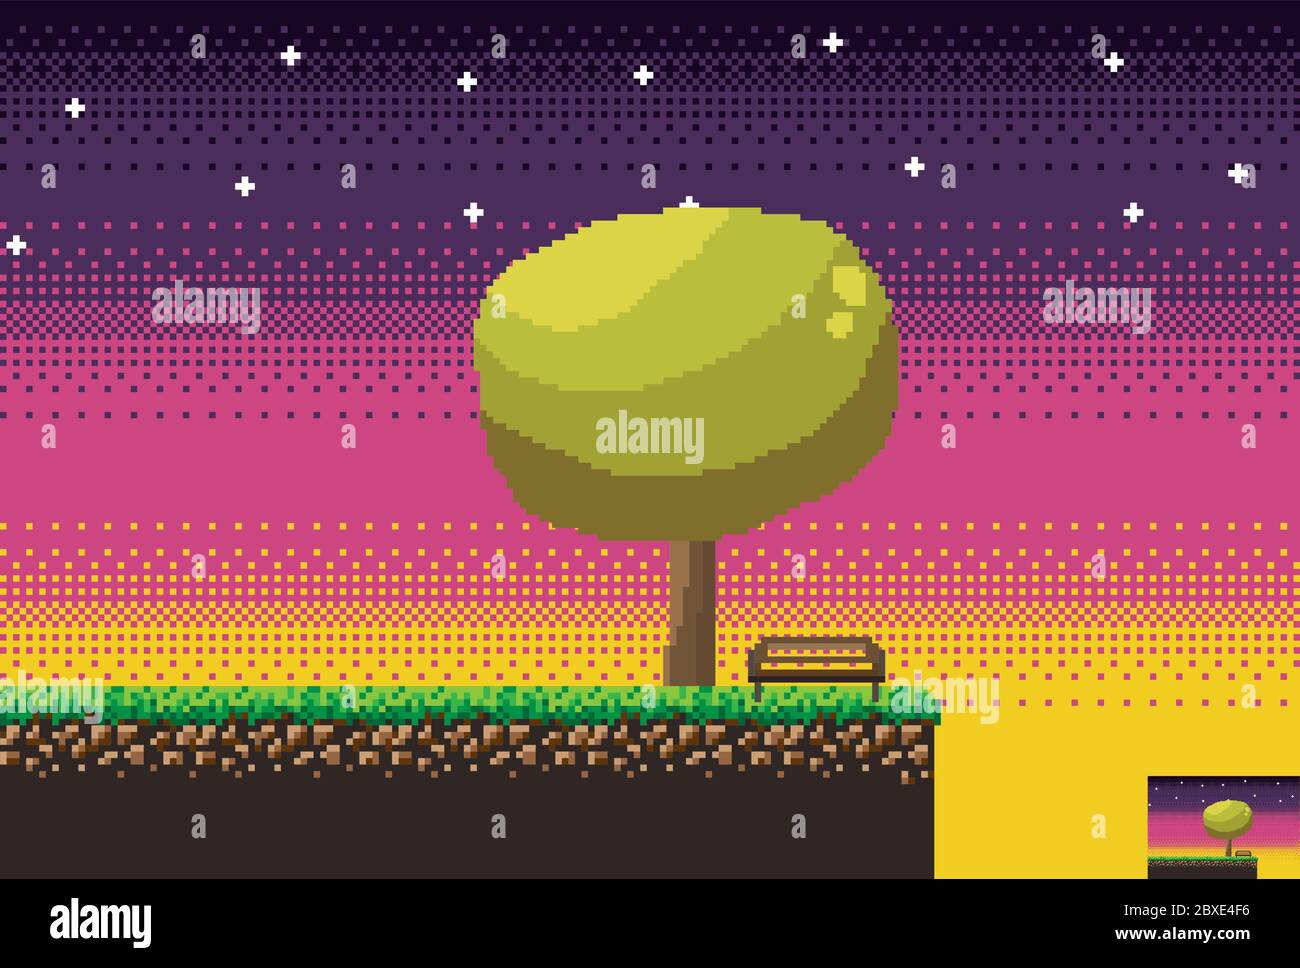 8bit Indie Arcade-Spielszene, Pause bei Sonnenuntergang mit einem Baum und einer Bank. Details des Spiels Land, Gras, Baum, Bank. Stock Vektor